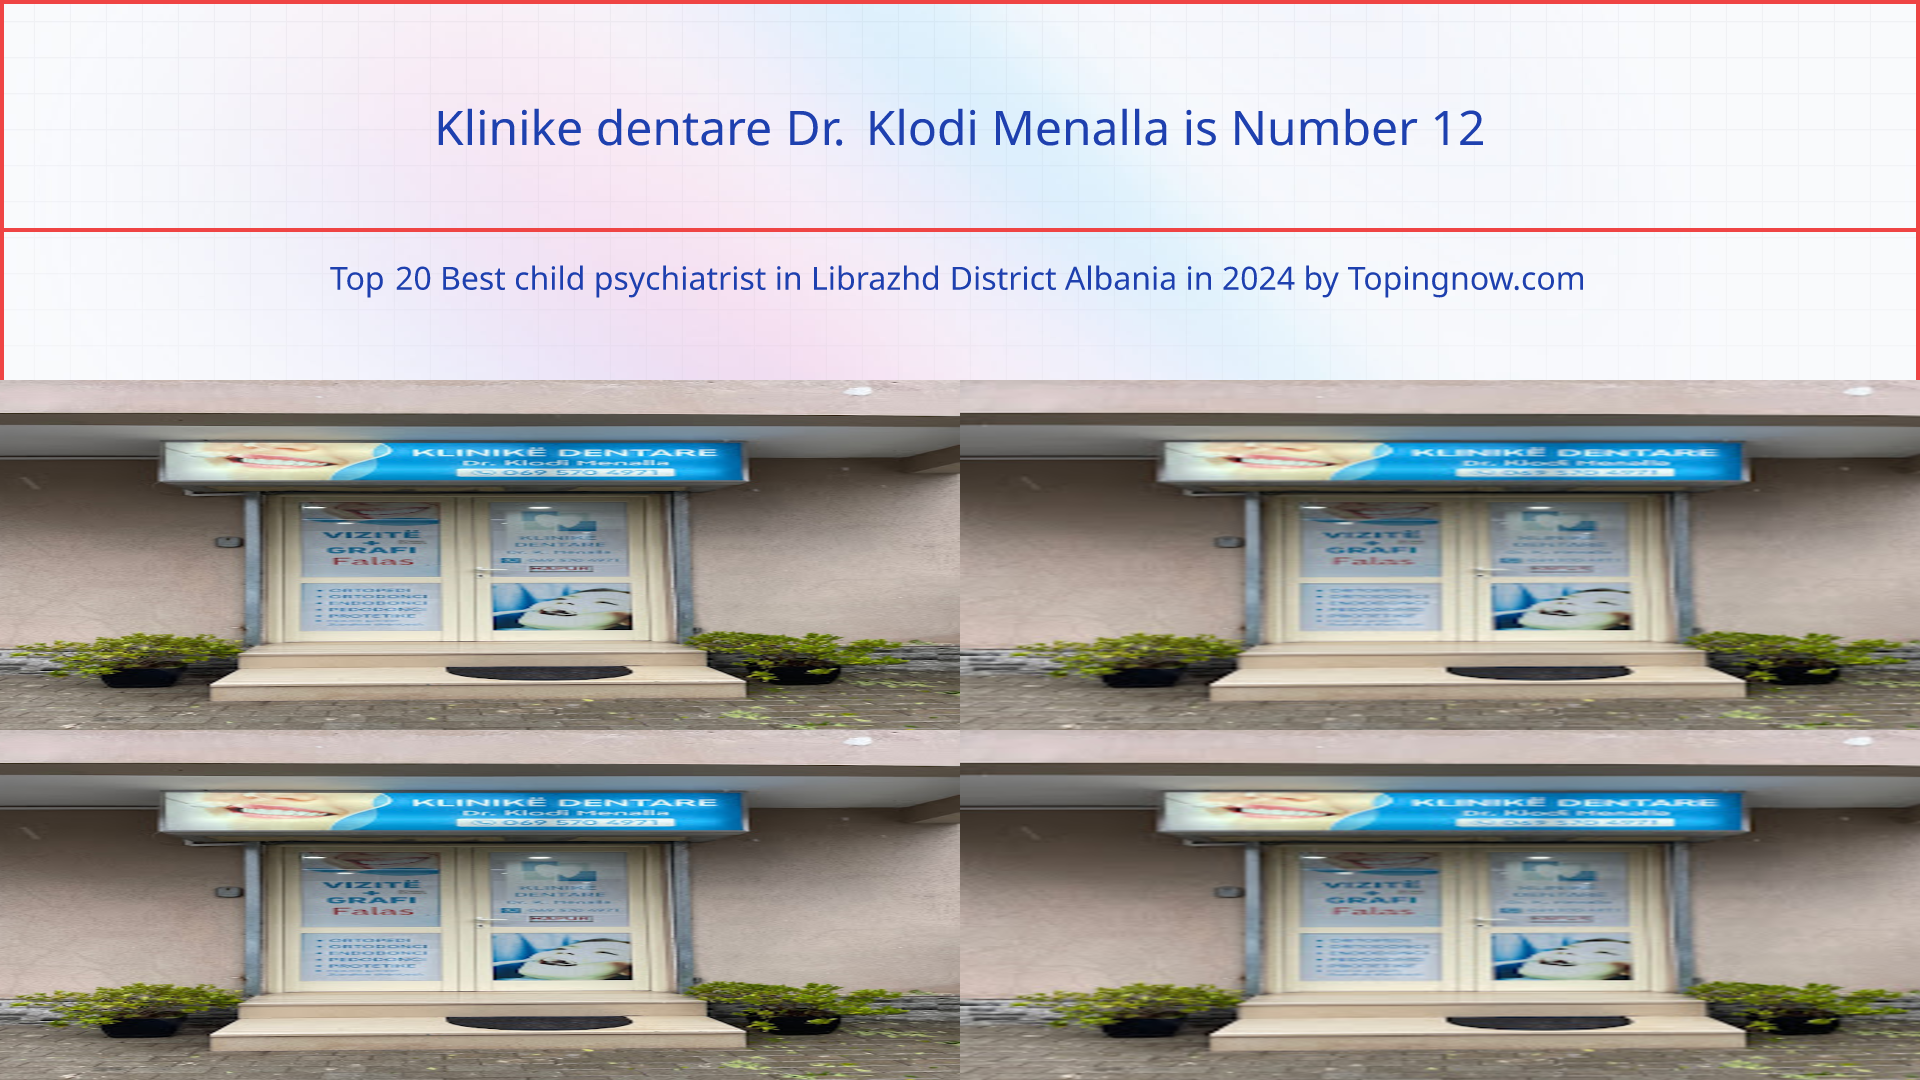 Klinike dentare Dr. Klodi Menalla: Top 20 Best child psychiatrist in Librazhd District Albania in 2024